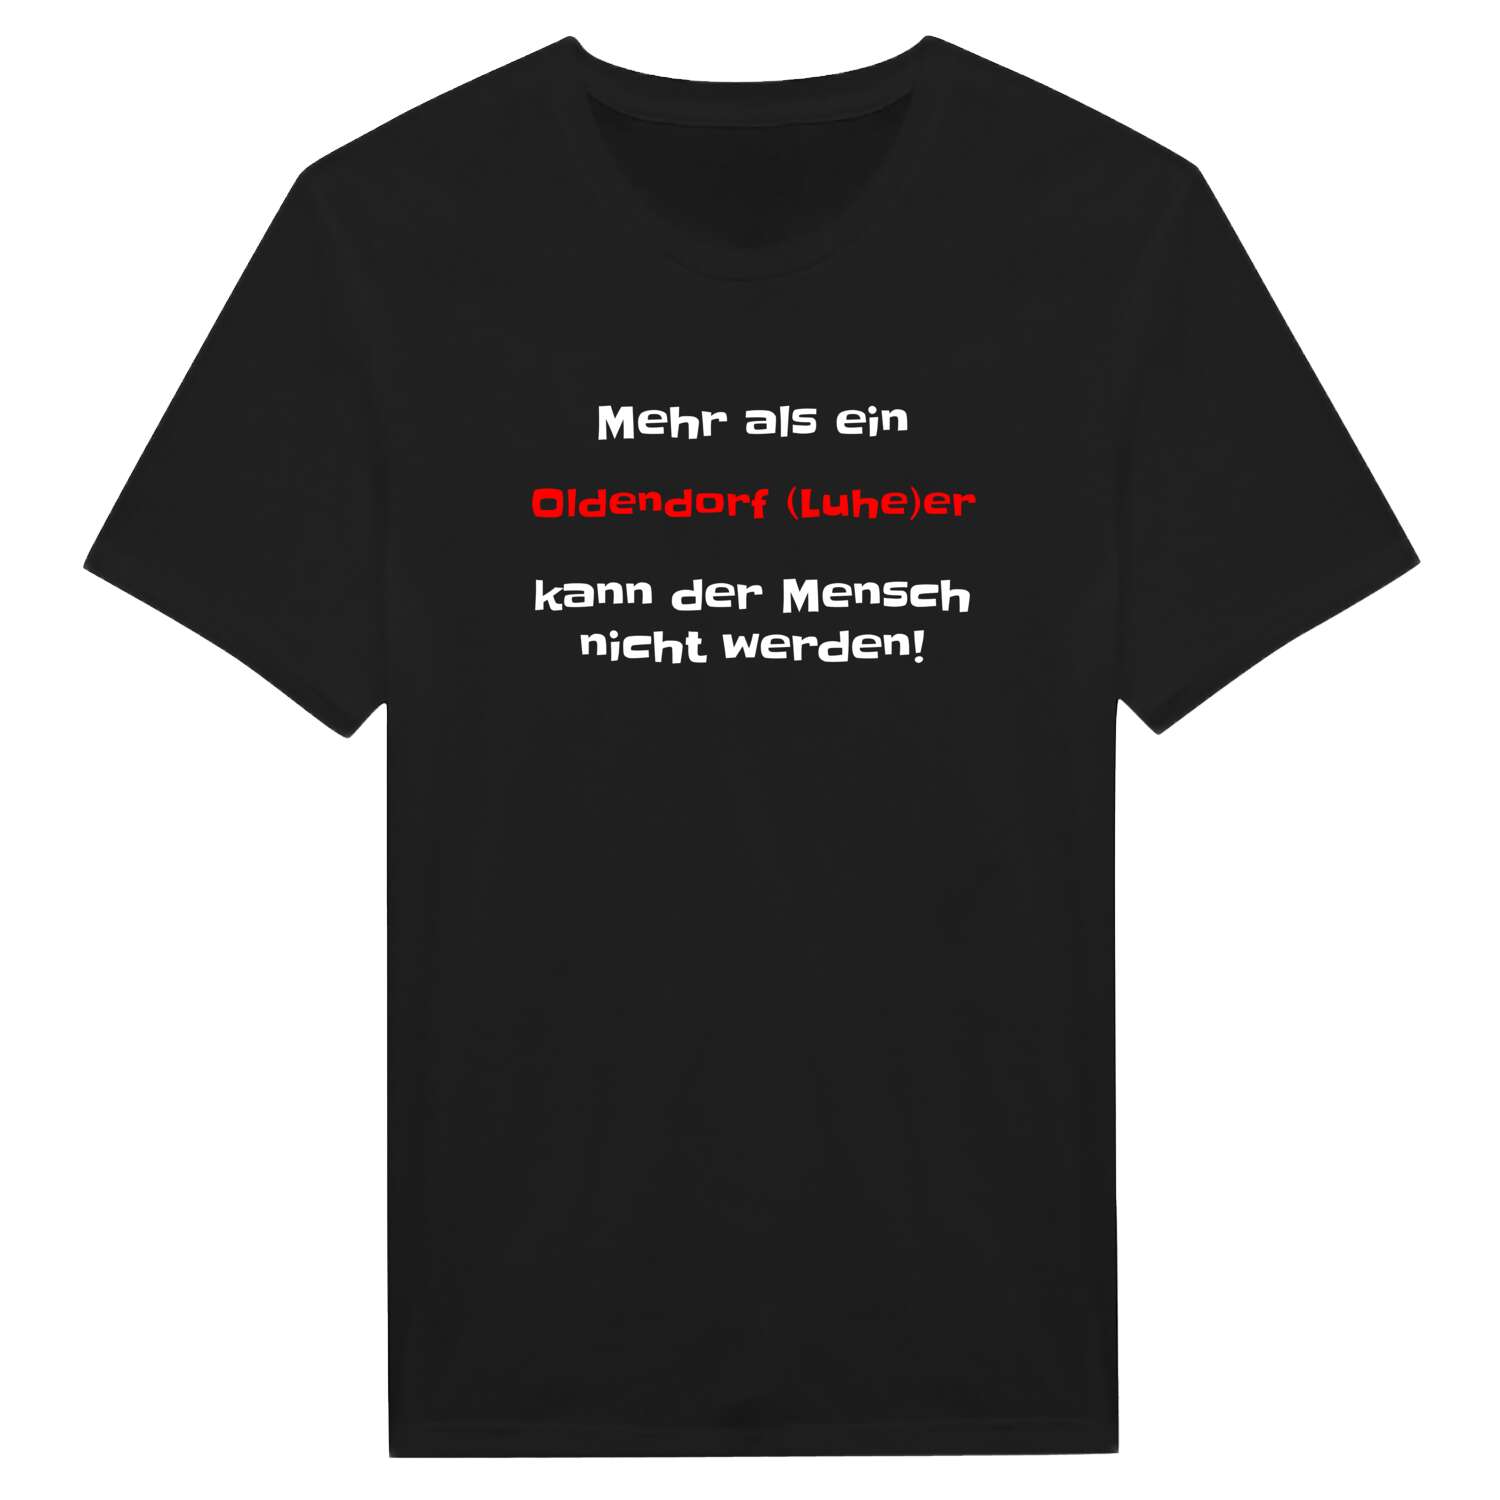 Oldendorf (Luhe) T-Shirt »Mehr als ein«